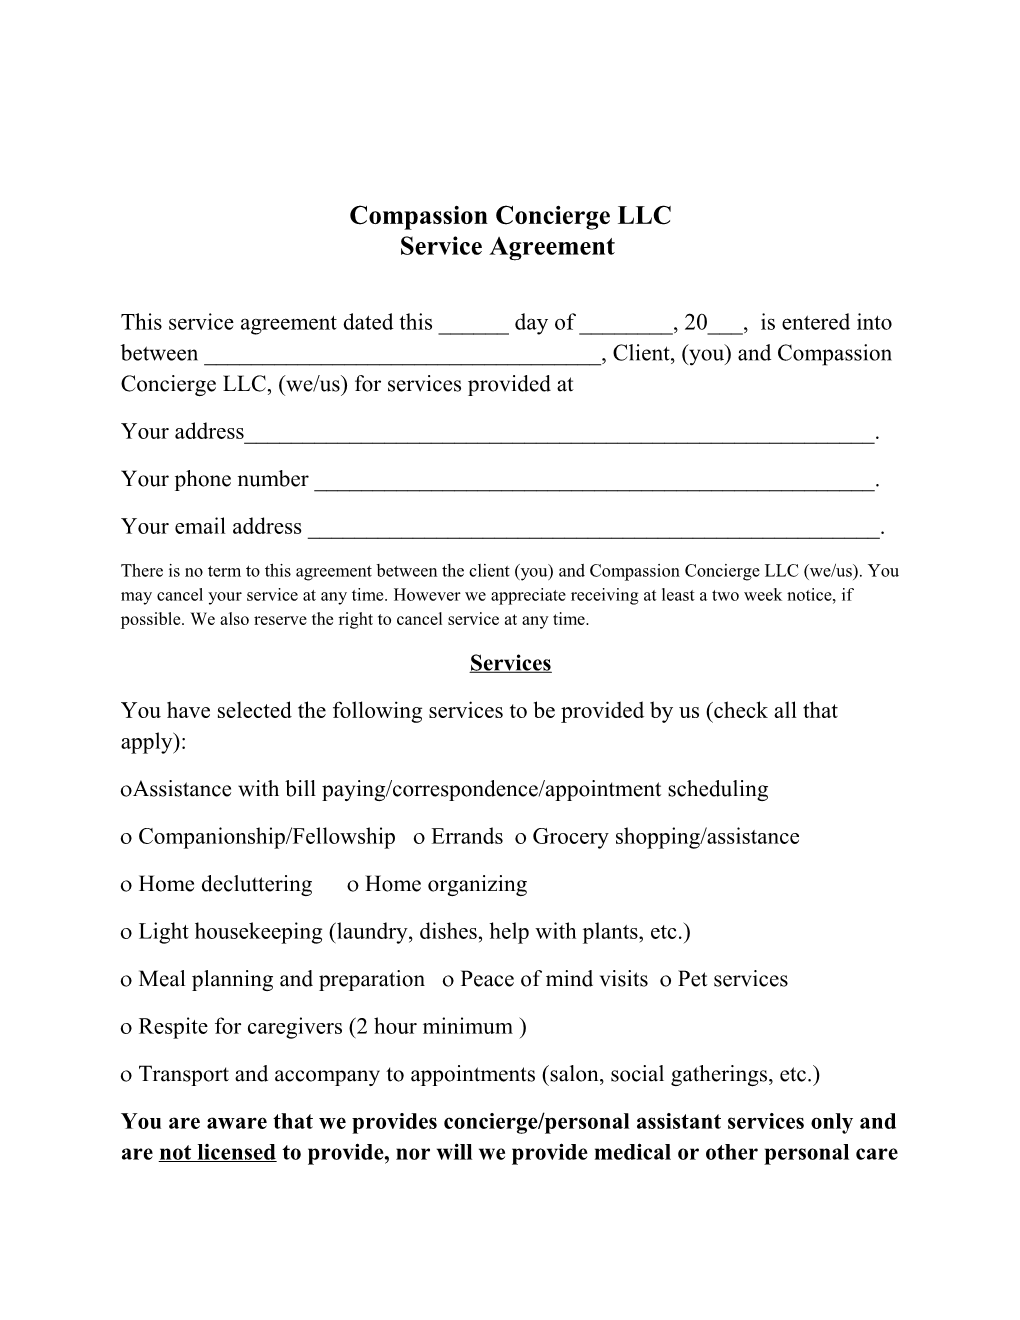 Compassion Concierge LLC